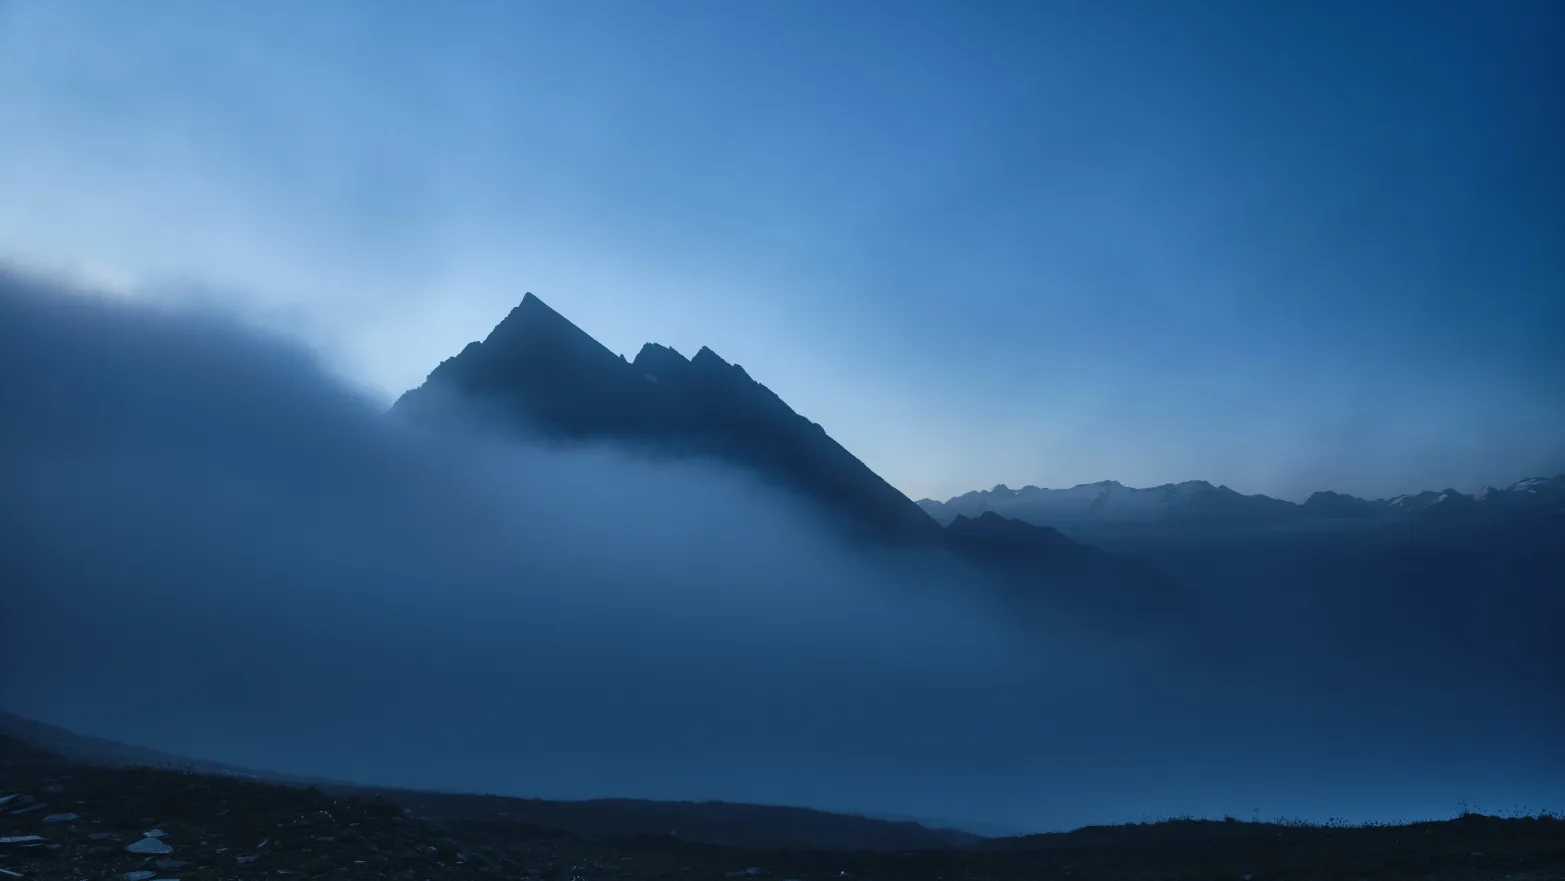 špička hory vykukující z mlhy